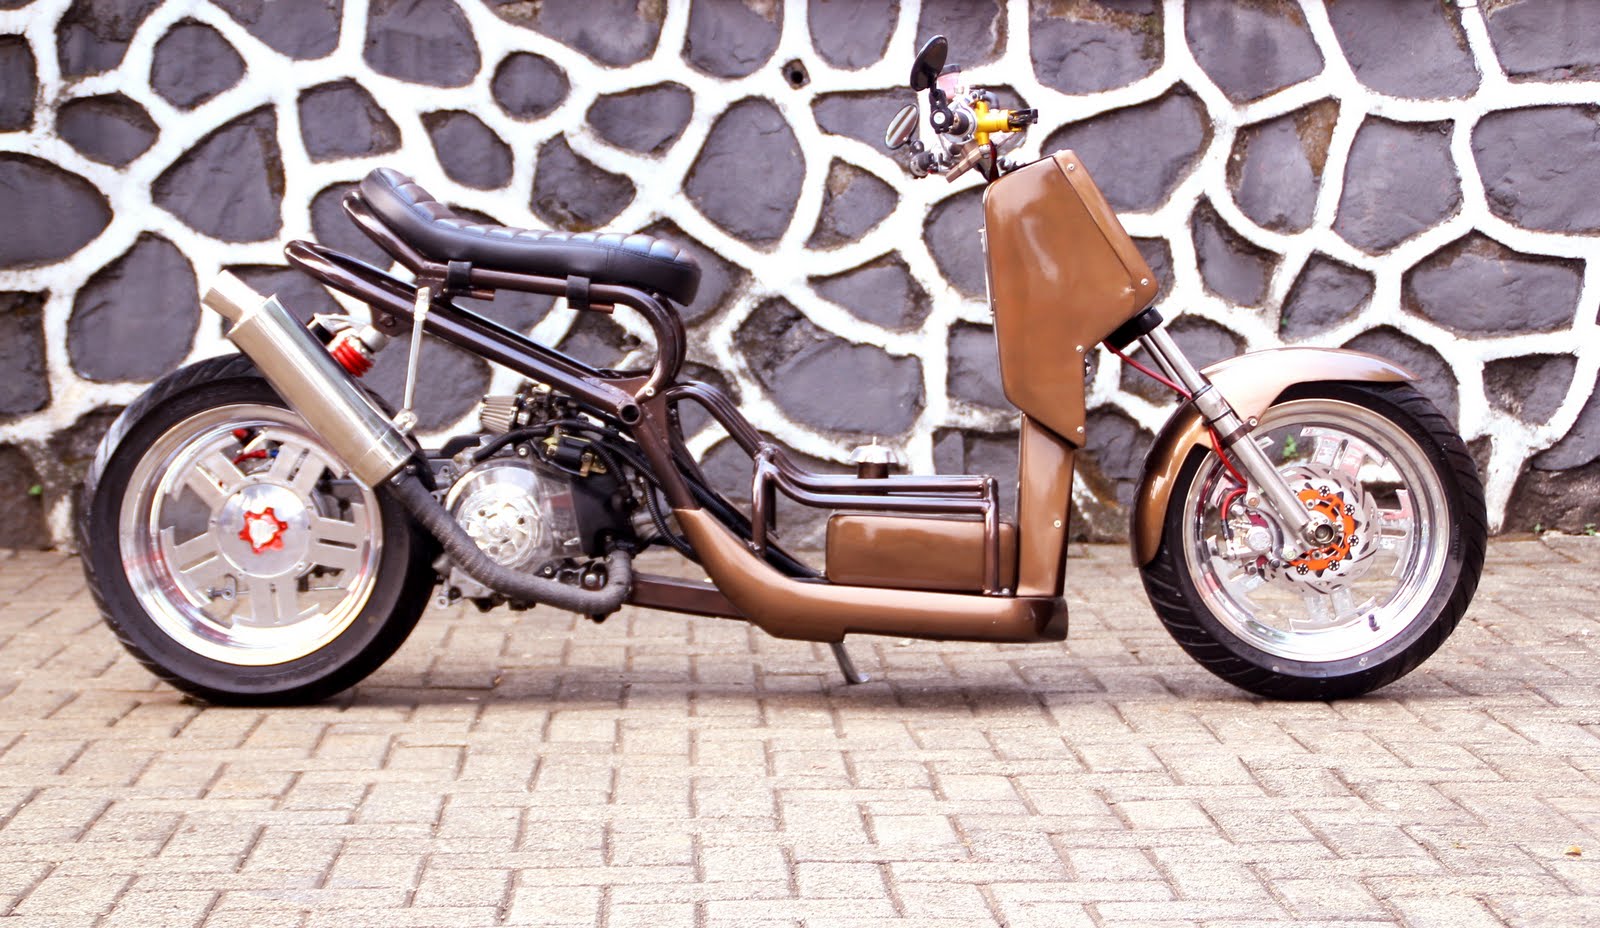 November 2011 StudioMotor Custom Bike